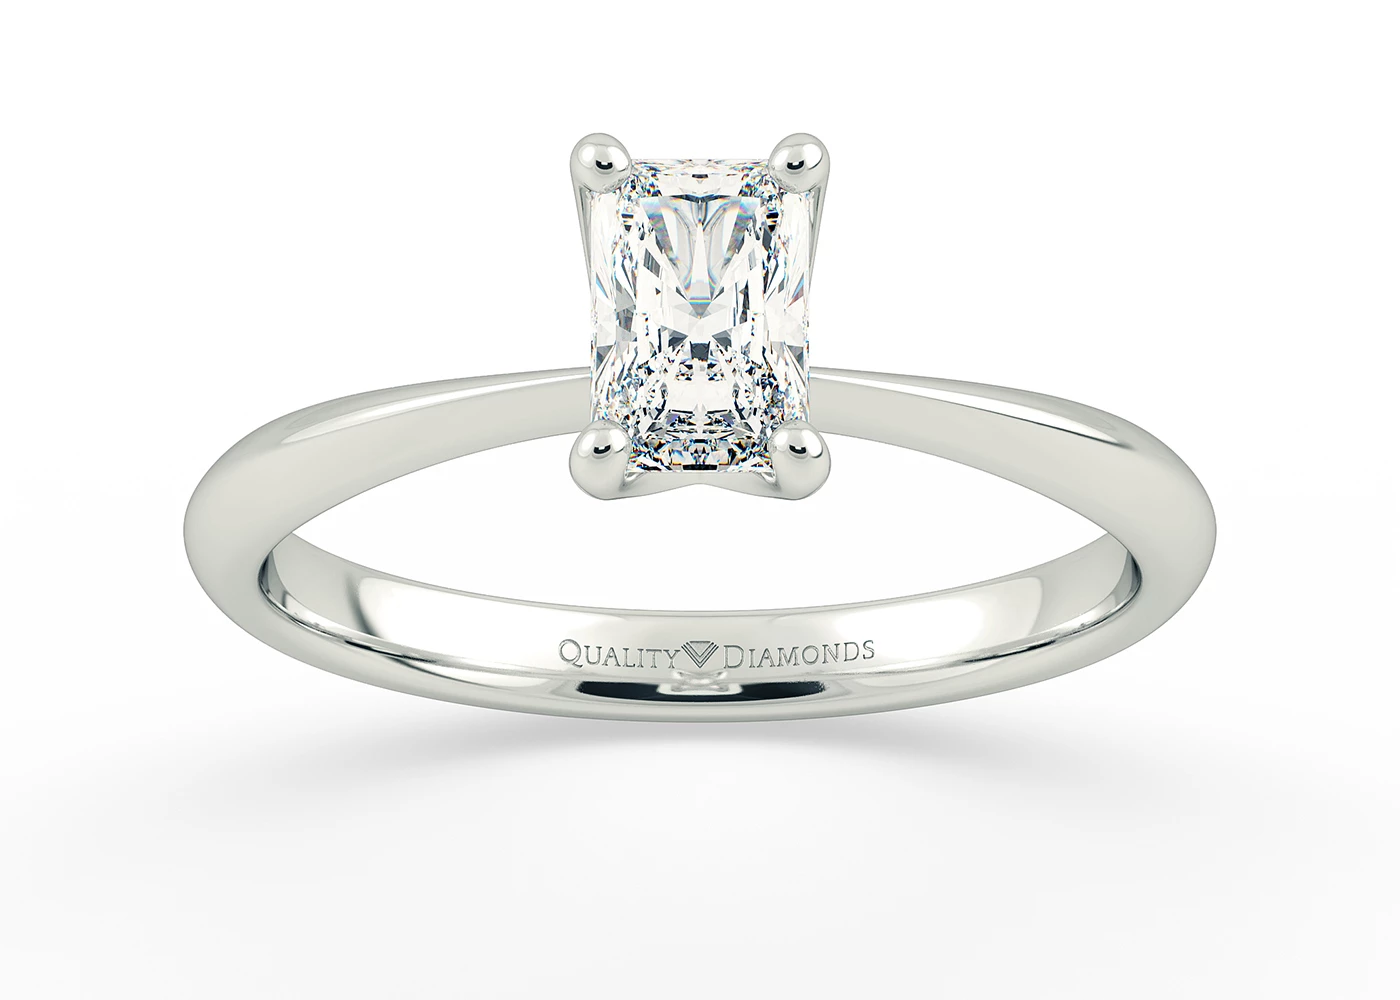 Radiant Amorette Diamond Ring in Palladium